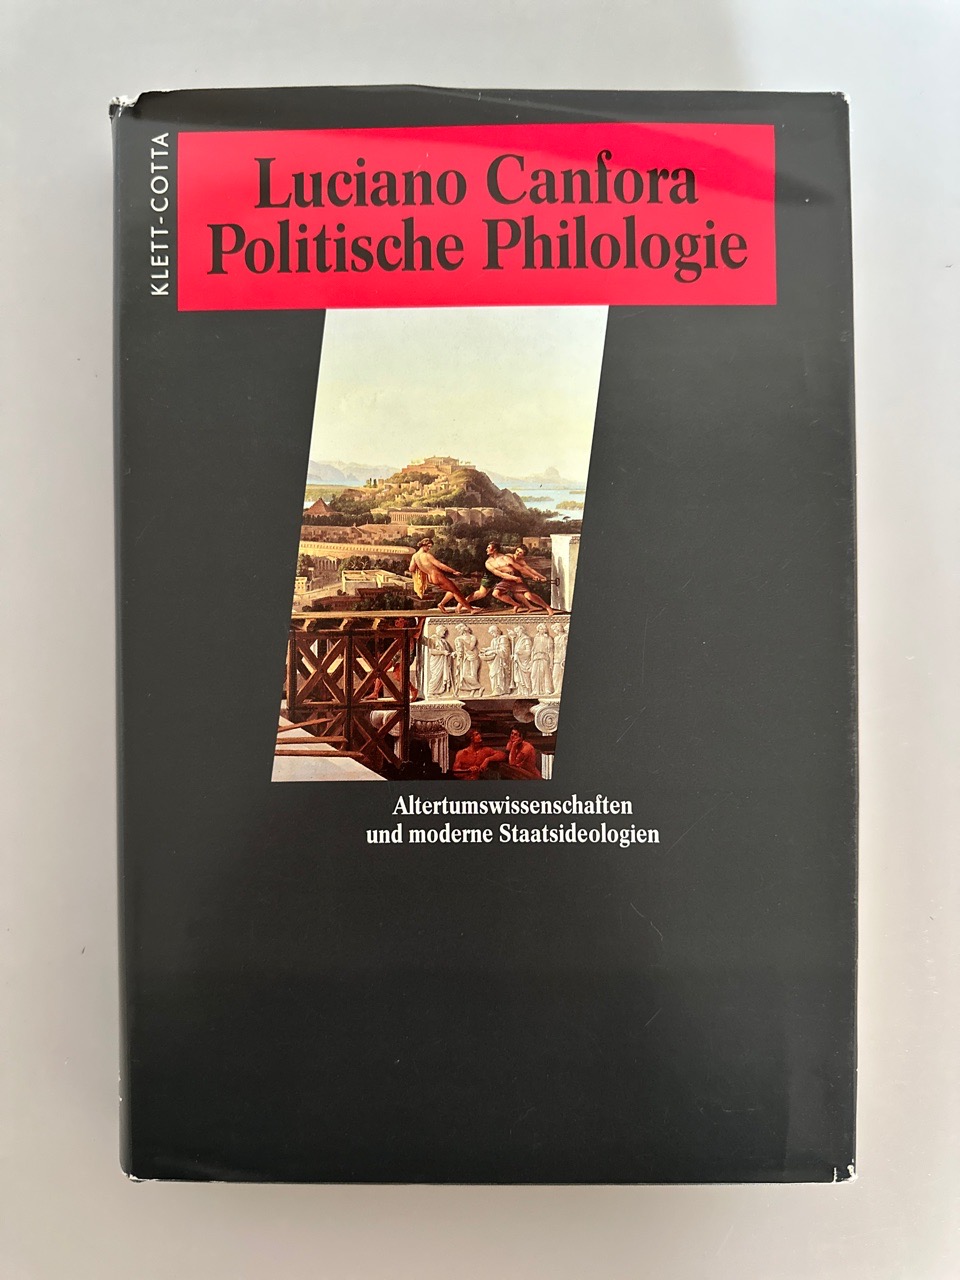 Politische Philologie: Altertumswissenschaften und moderne Staatsideologie. - Canfora, Luciano